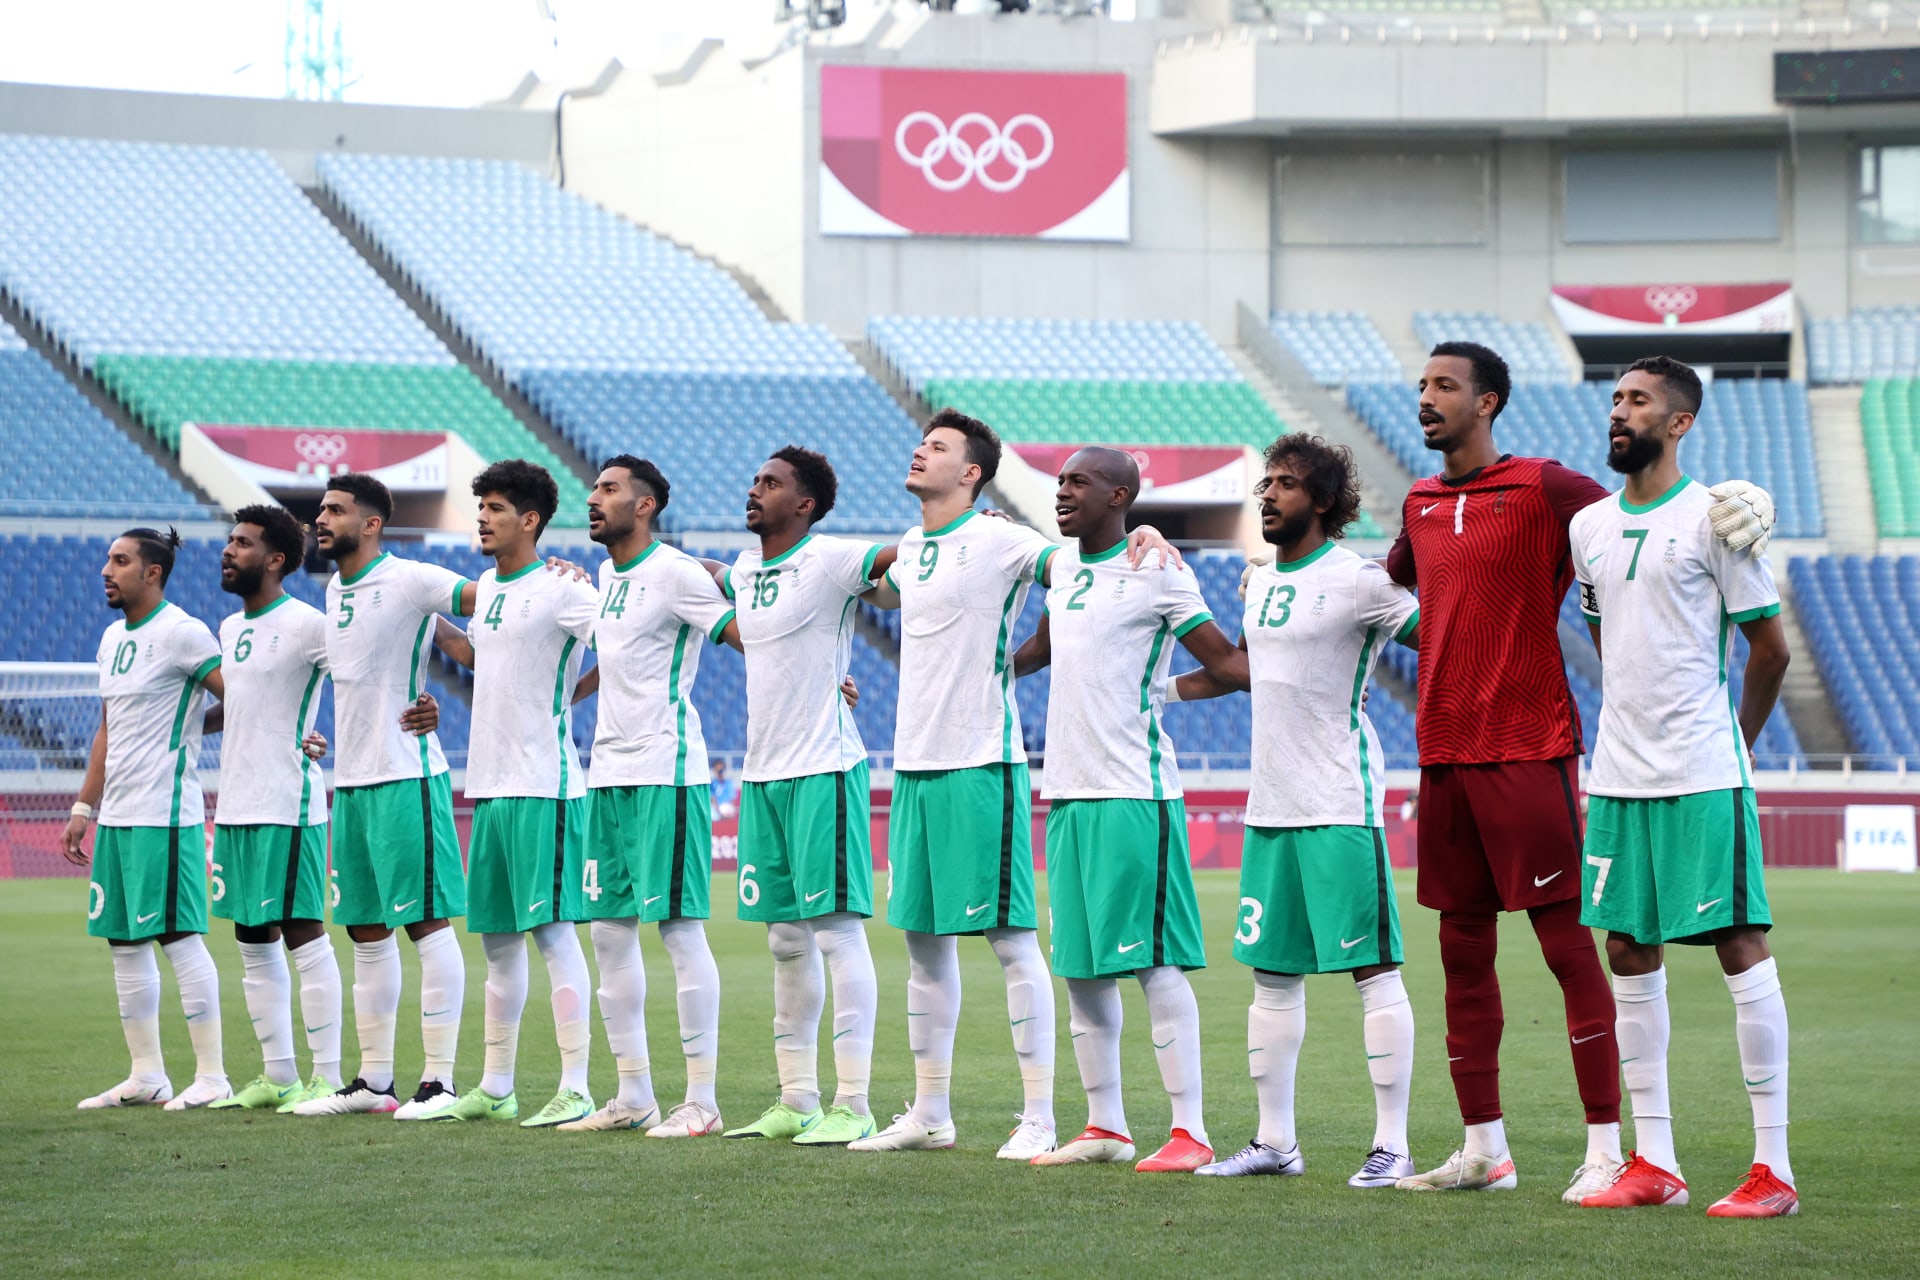 قائمة المنتخب السعودي لكأس العالم 2022 في قطر.. من سيمثل "الأخضر"؟